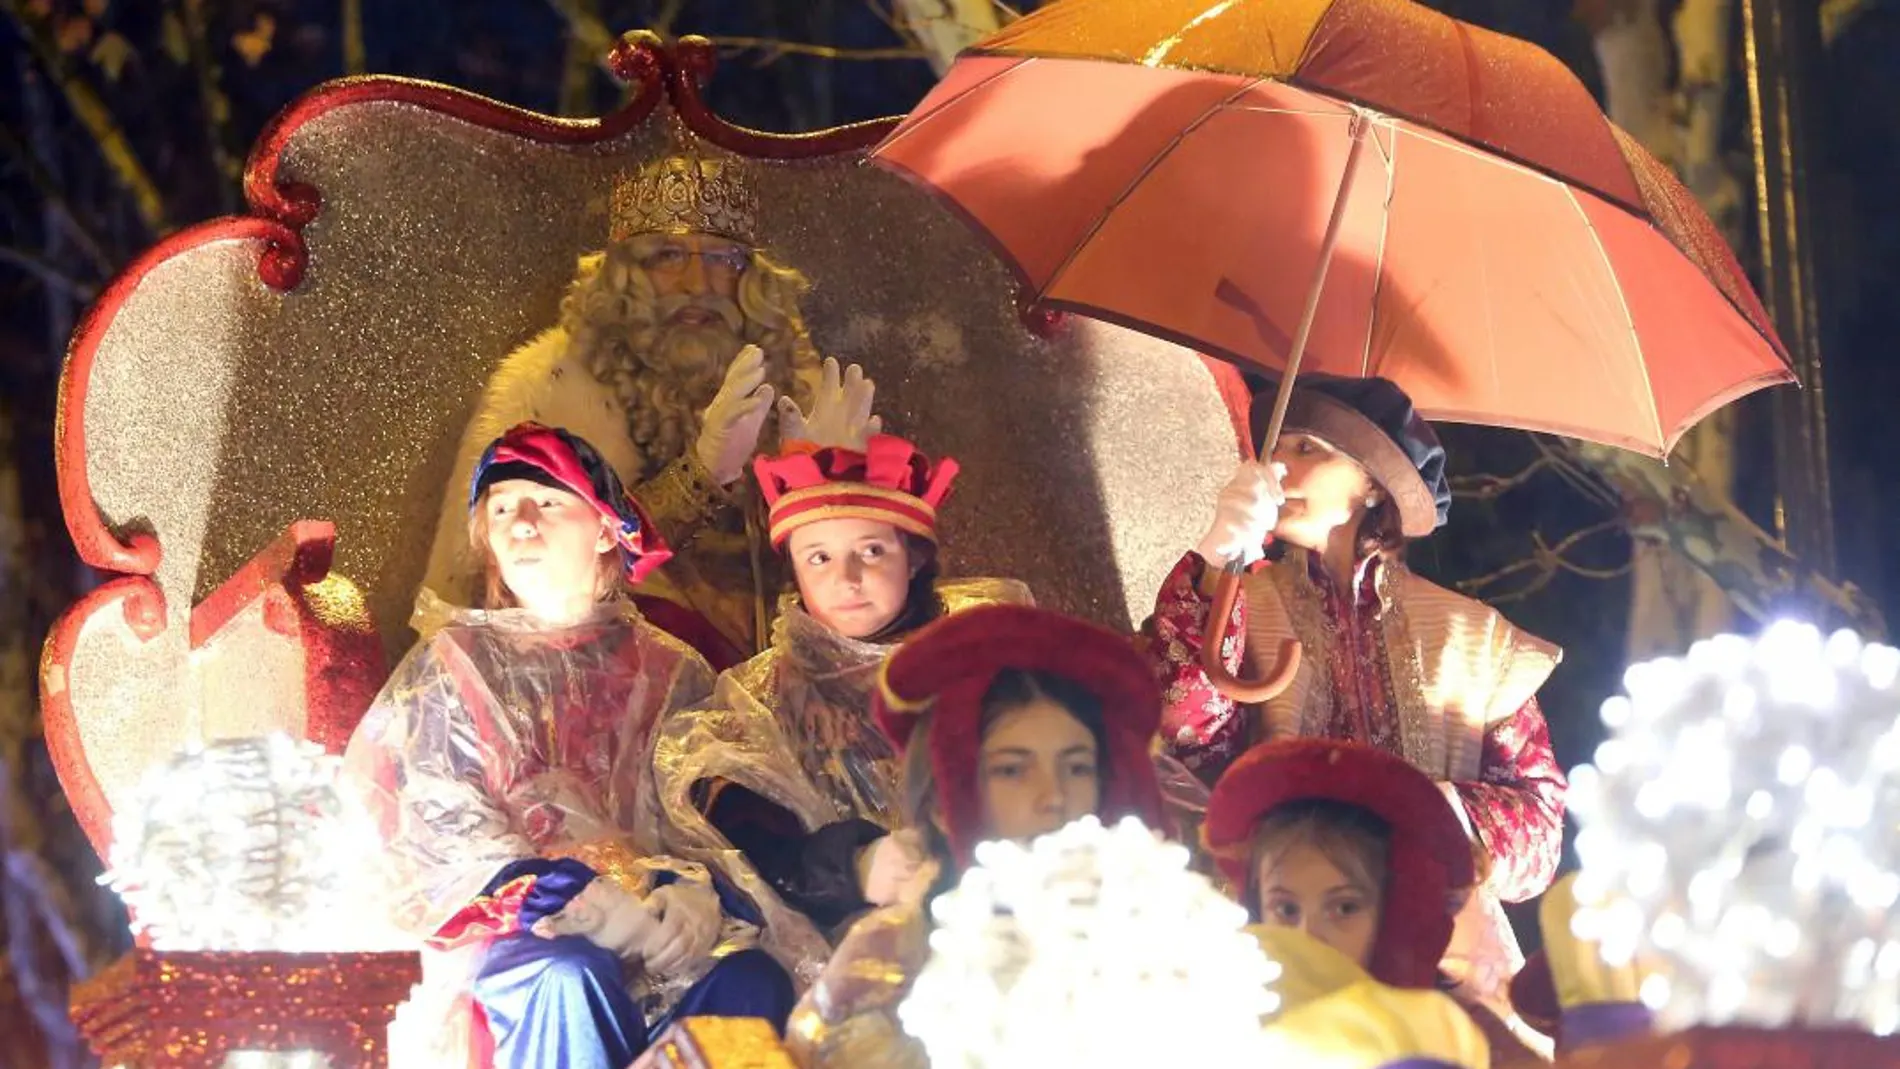 El Rey Melchor saluda desde su carroza, protegido bajo un paraguas de la incesante lluvia que cayó en Valladolid